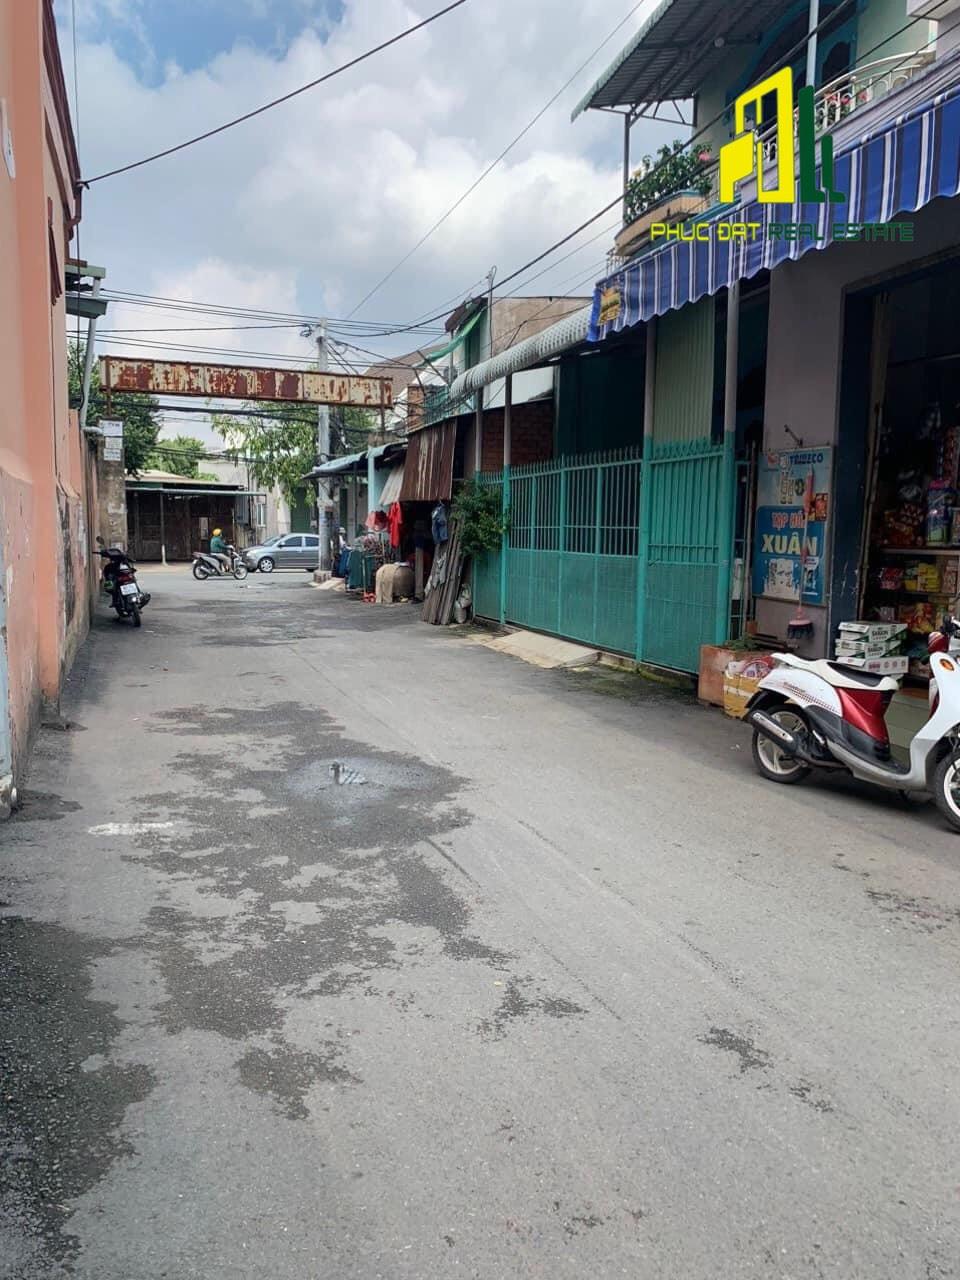 Bán Căn Nhà Tại P.Bửu Hòa, TP.Biên Hòa,SHR thổ cư 100%, giá rẻ, gần cafe Lộc Vừng - Ảnh 2